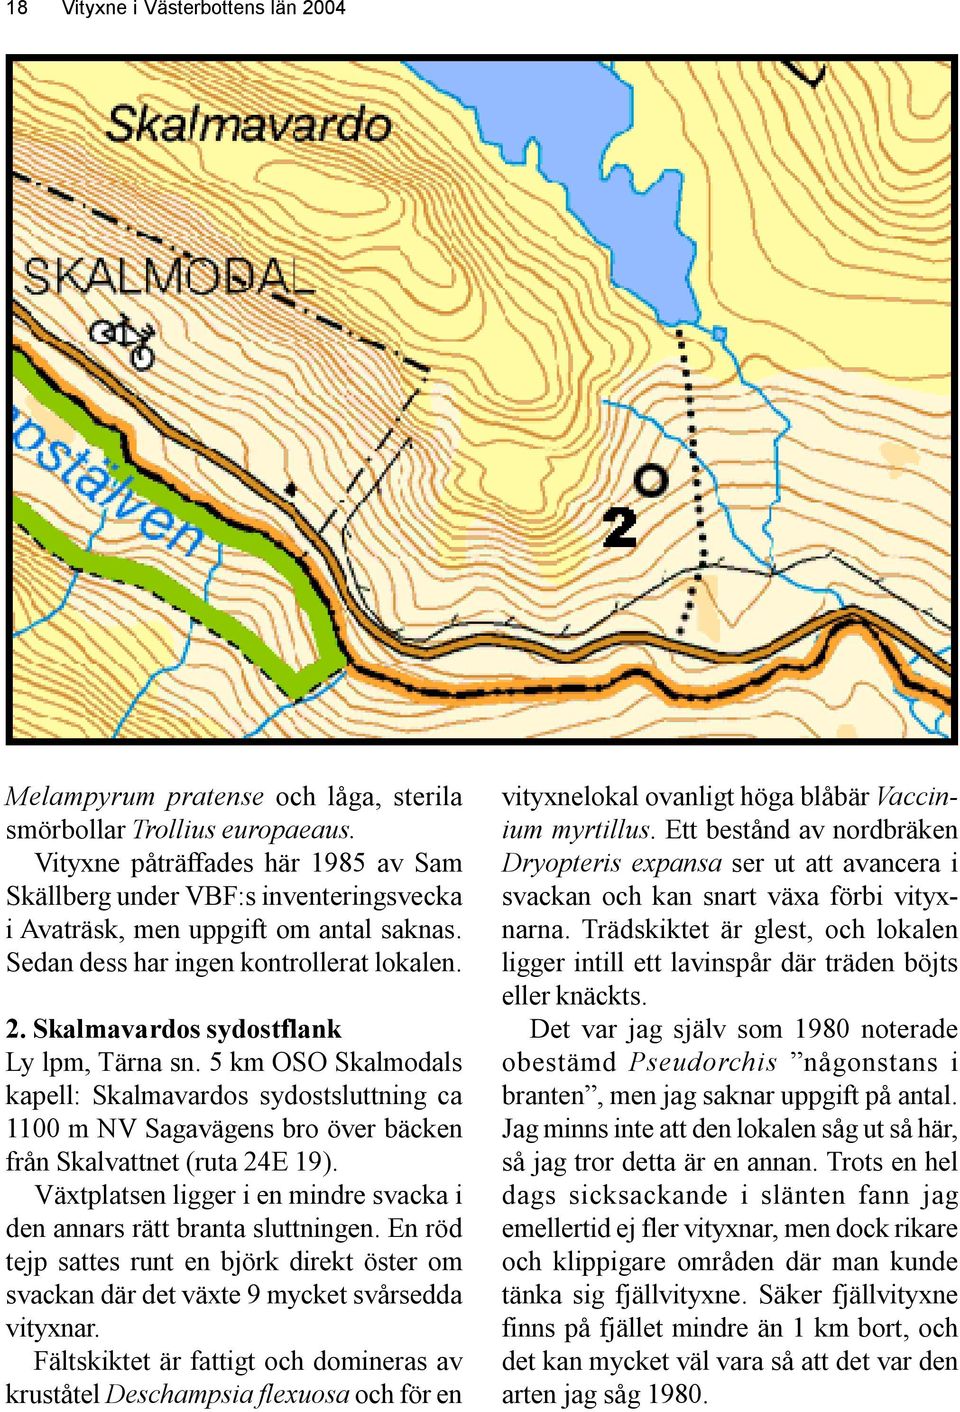 Skalmavardos sydostflank Ly lpm, Tärna sn. 5 km OSO Skalmodals kapell: Skalmavardos sydostsluttning ca 1100 m NV Sagavägens bro över bäcken från Skalvattnet (ruta 24E 19).